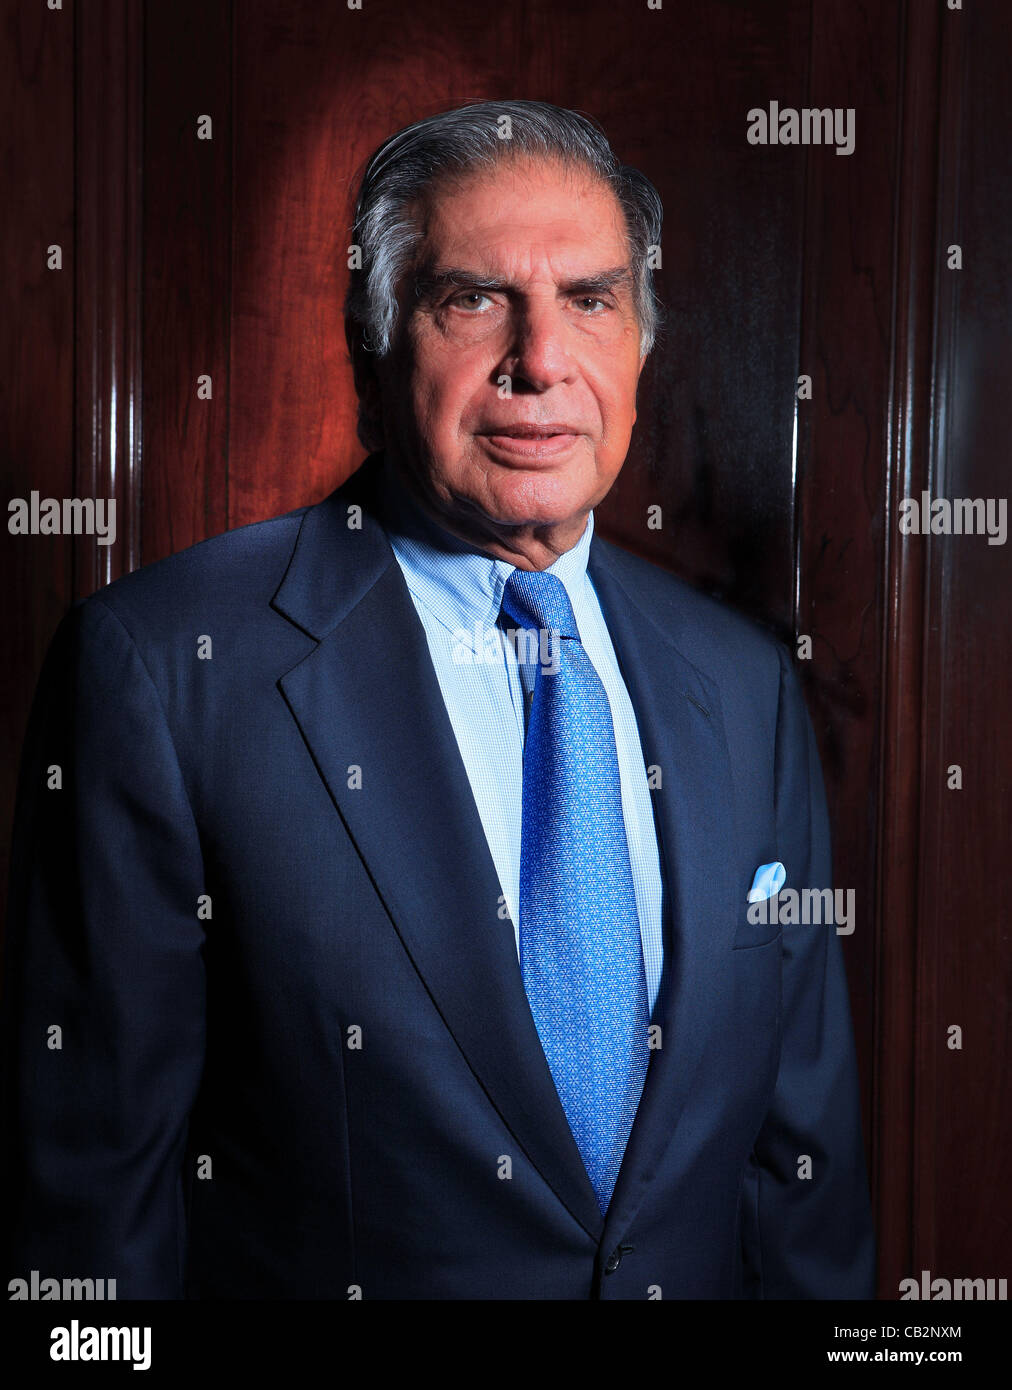 Peut16,2012 - Mumbai, Inde : Portrait de l'industriel indien Tata Rata, président de l'empire Tata de la Bombay House, le quartier général des groupes Tata à Mumbai. (Subhash Sharma) Banque D'Images